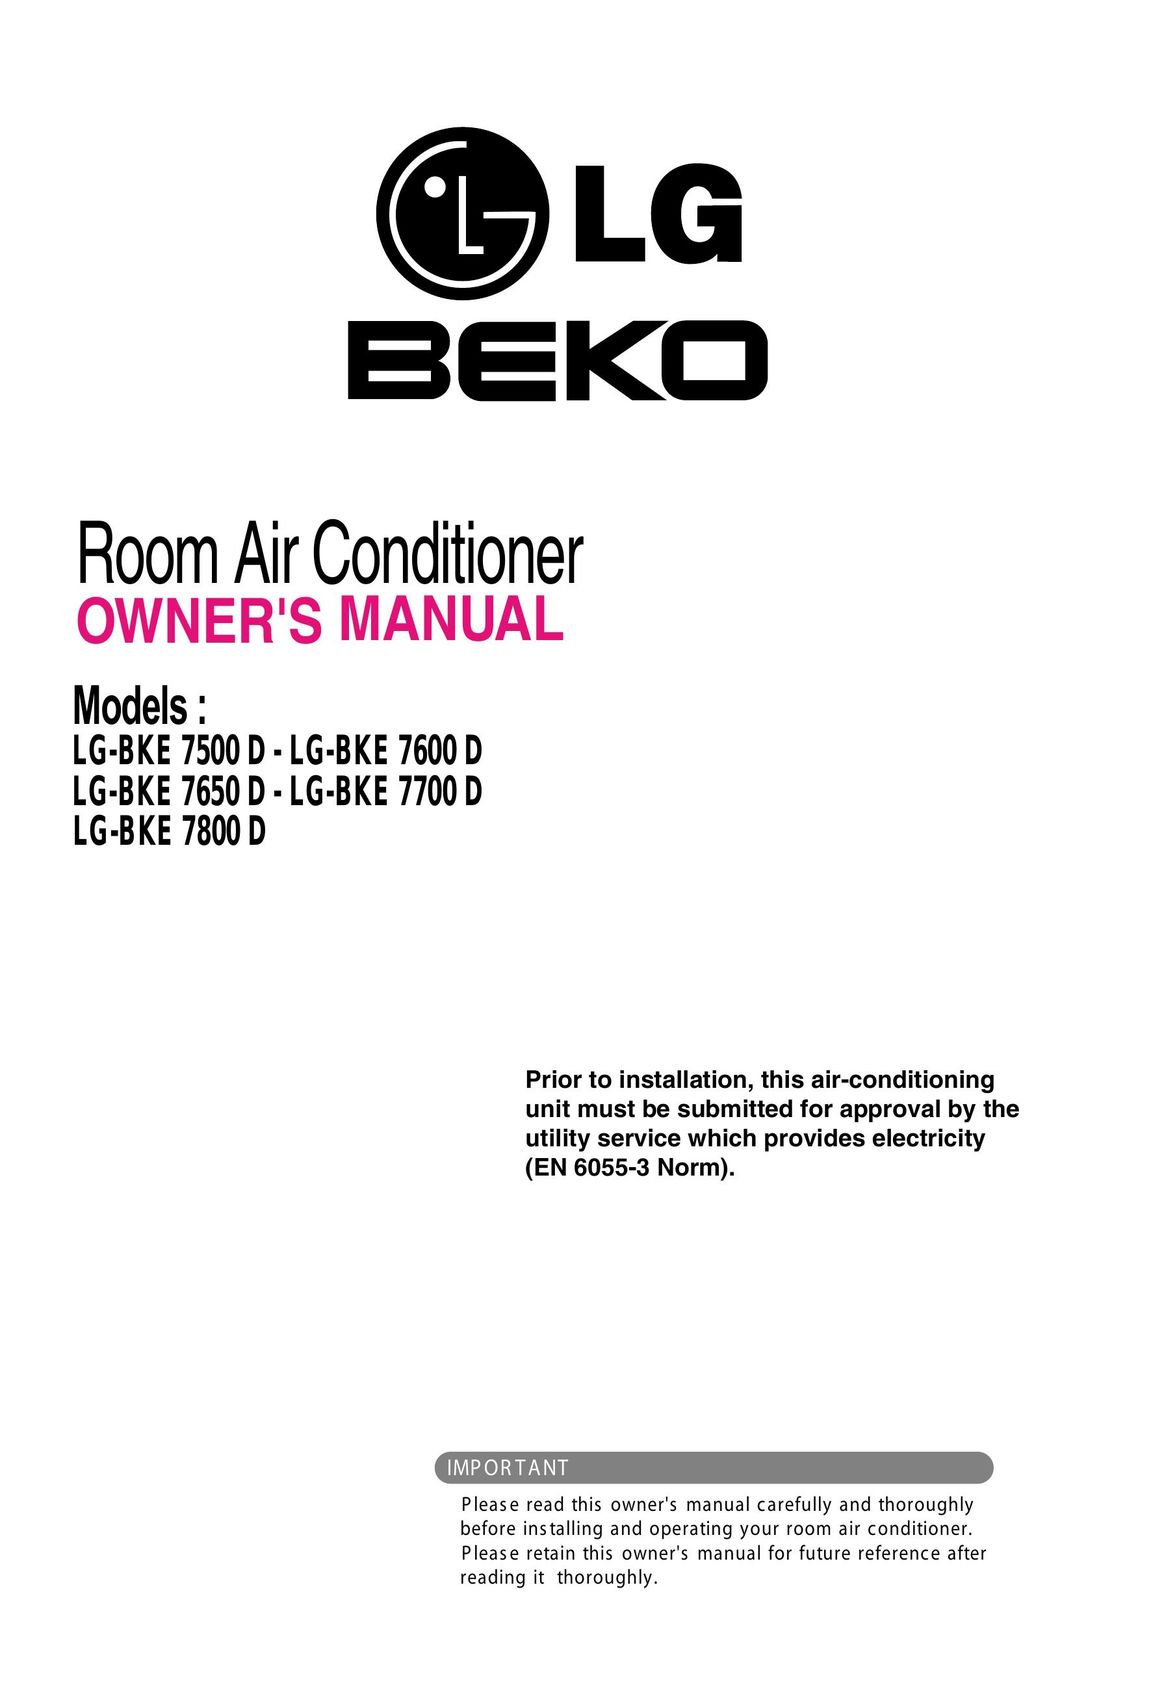 Beko LG-BKE 7800 D Air Conditioner User Manual